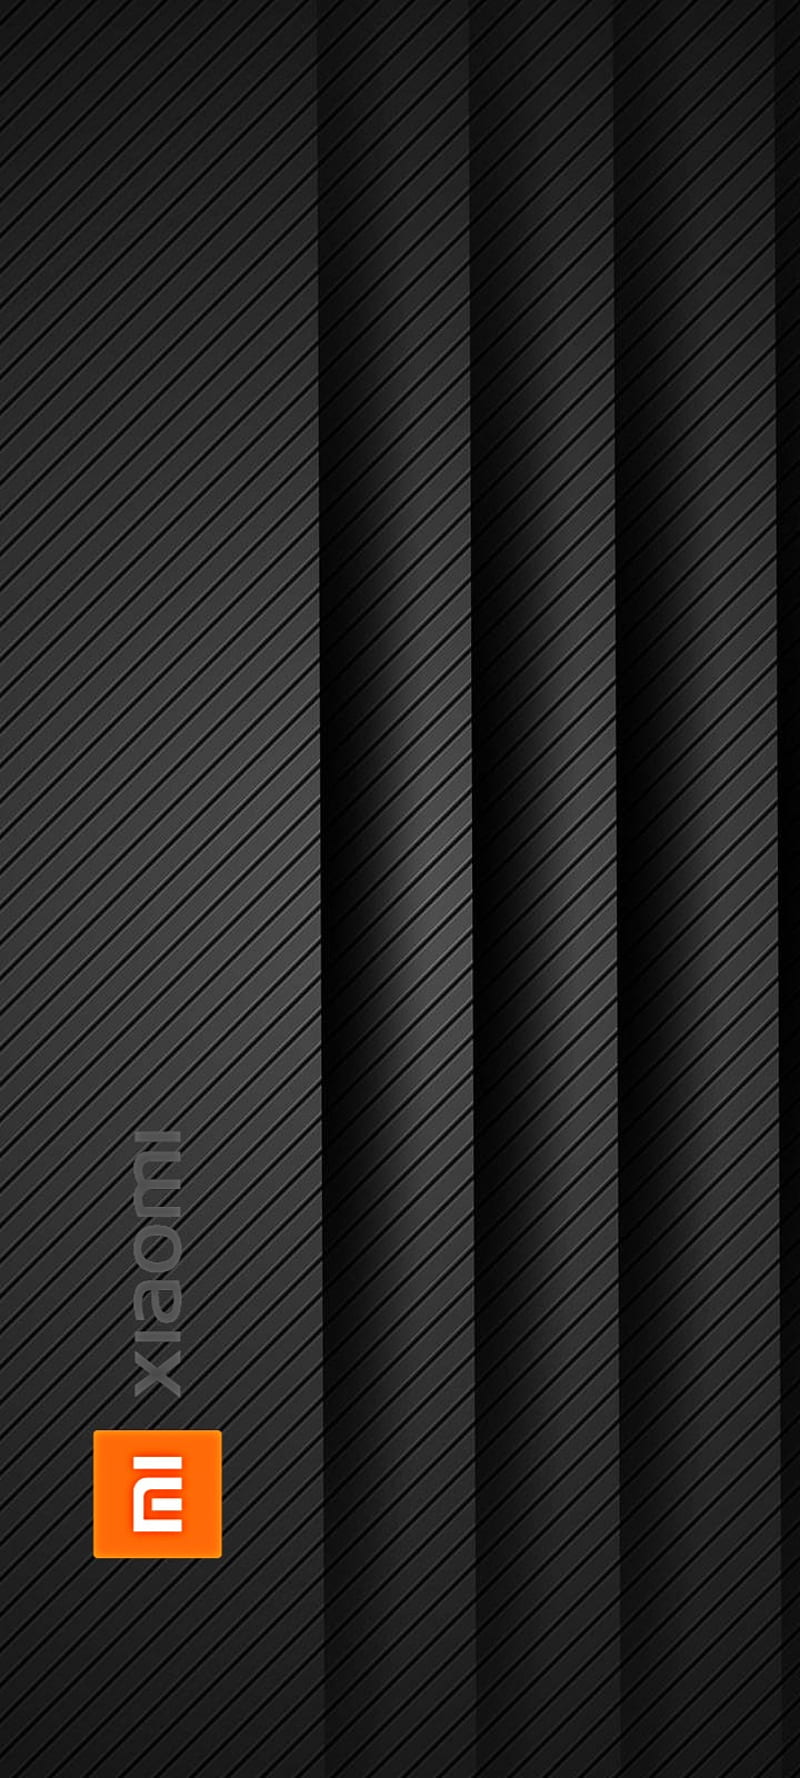 Xiaomi 2 là một trong những mẫu điện thoại cổ điển của Xiaomi, với thiết kế thanh lịch và tinh tế. Để tôn lên vẻ đẹp của chiếc điện thoại này, hãy sử dụng hình nền đen sang trọng và chất lượng cao. Bấm vào hình ảnh để tìm kiếm những mẫu hình nền tốt nhất cho điện thoại Xiaomi 2 của bạn.